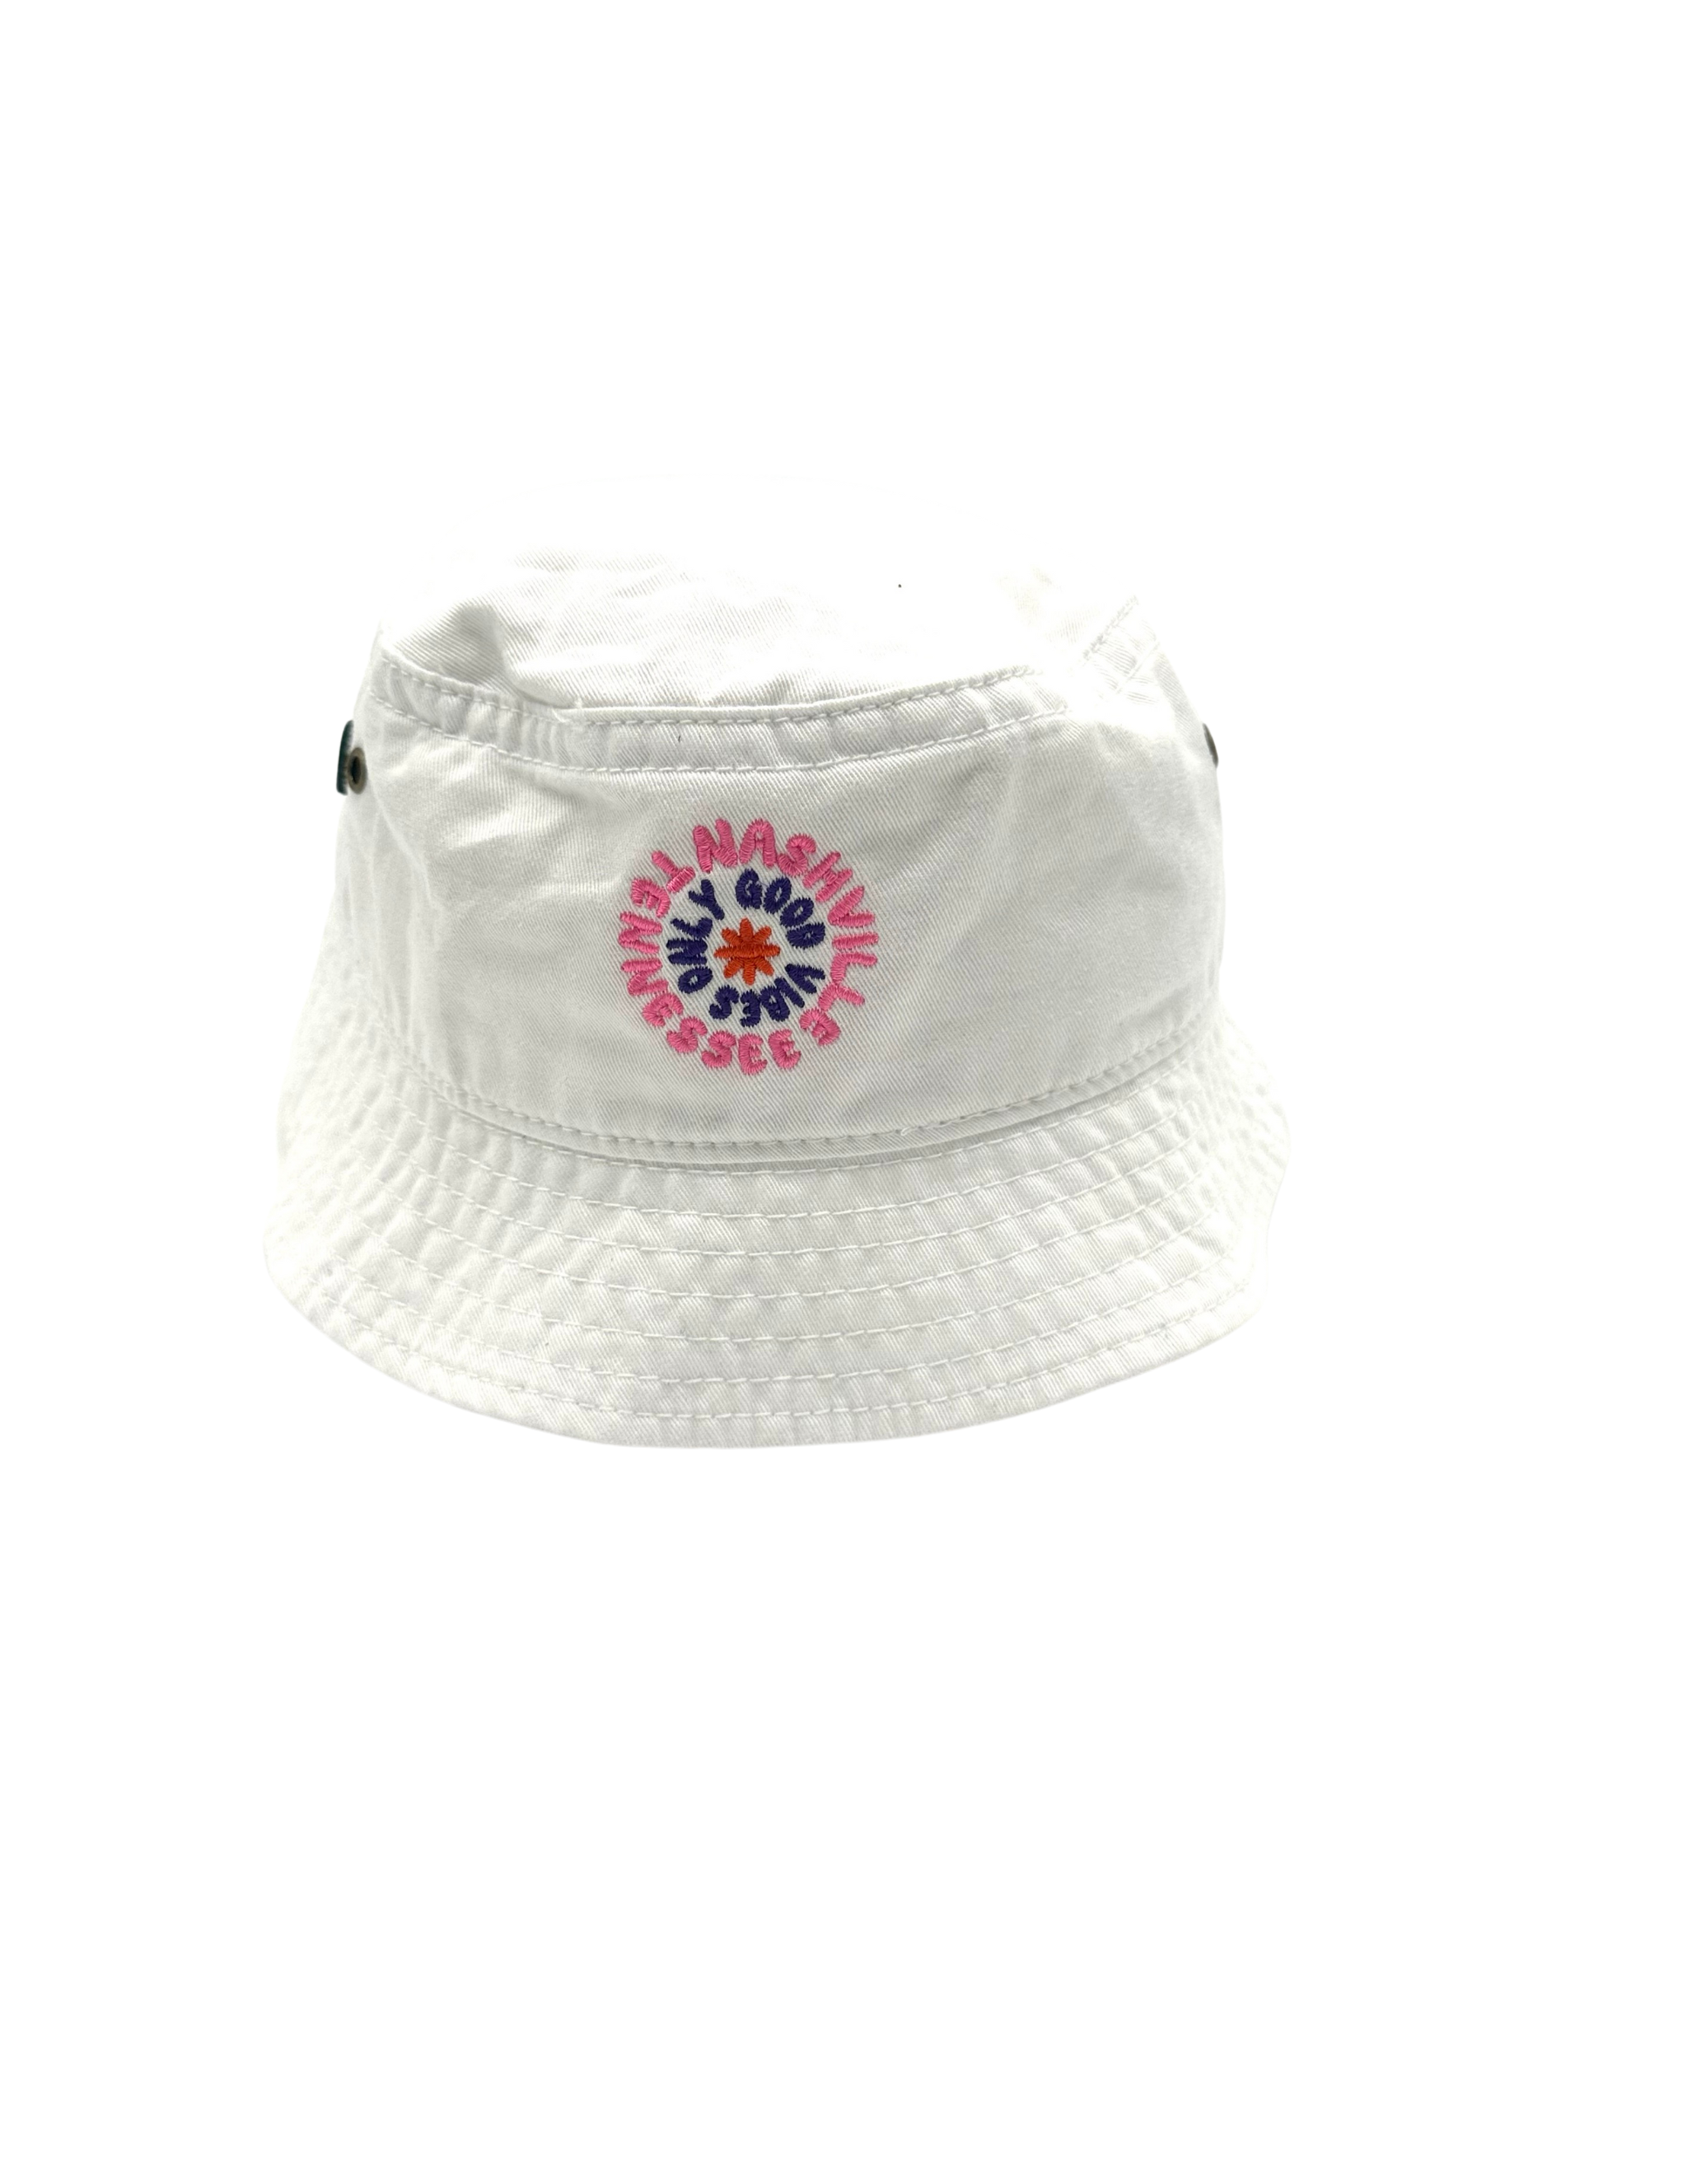 Opry Festival Bucket Hat